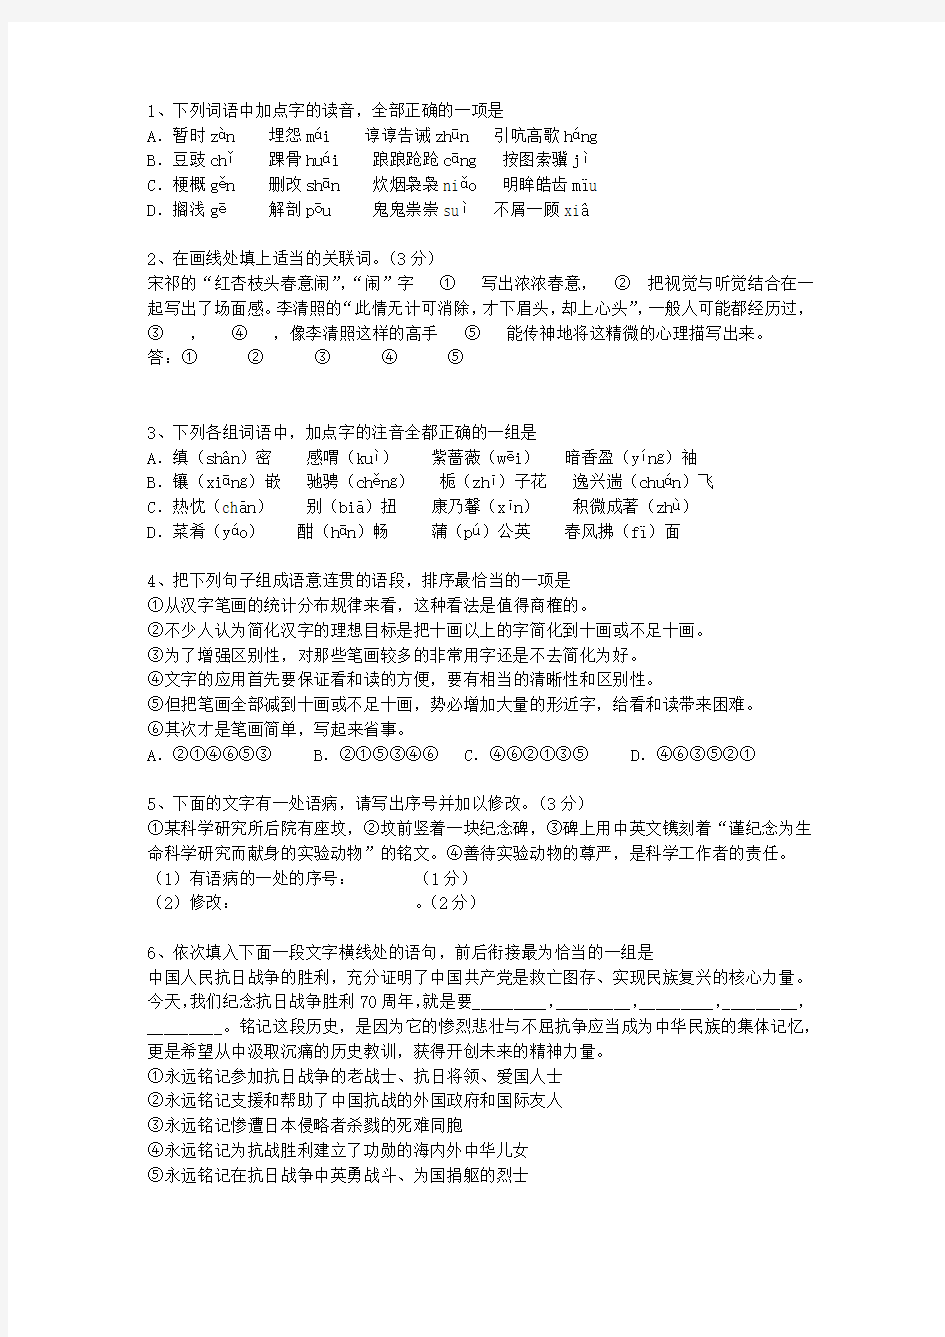 2014江苏省高考语文真题试卷考试重点和考试技巧